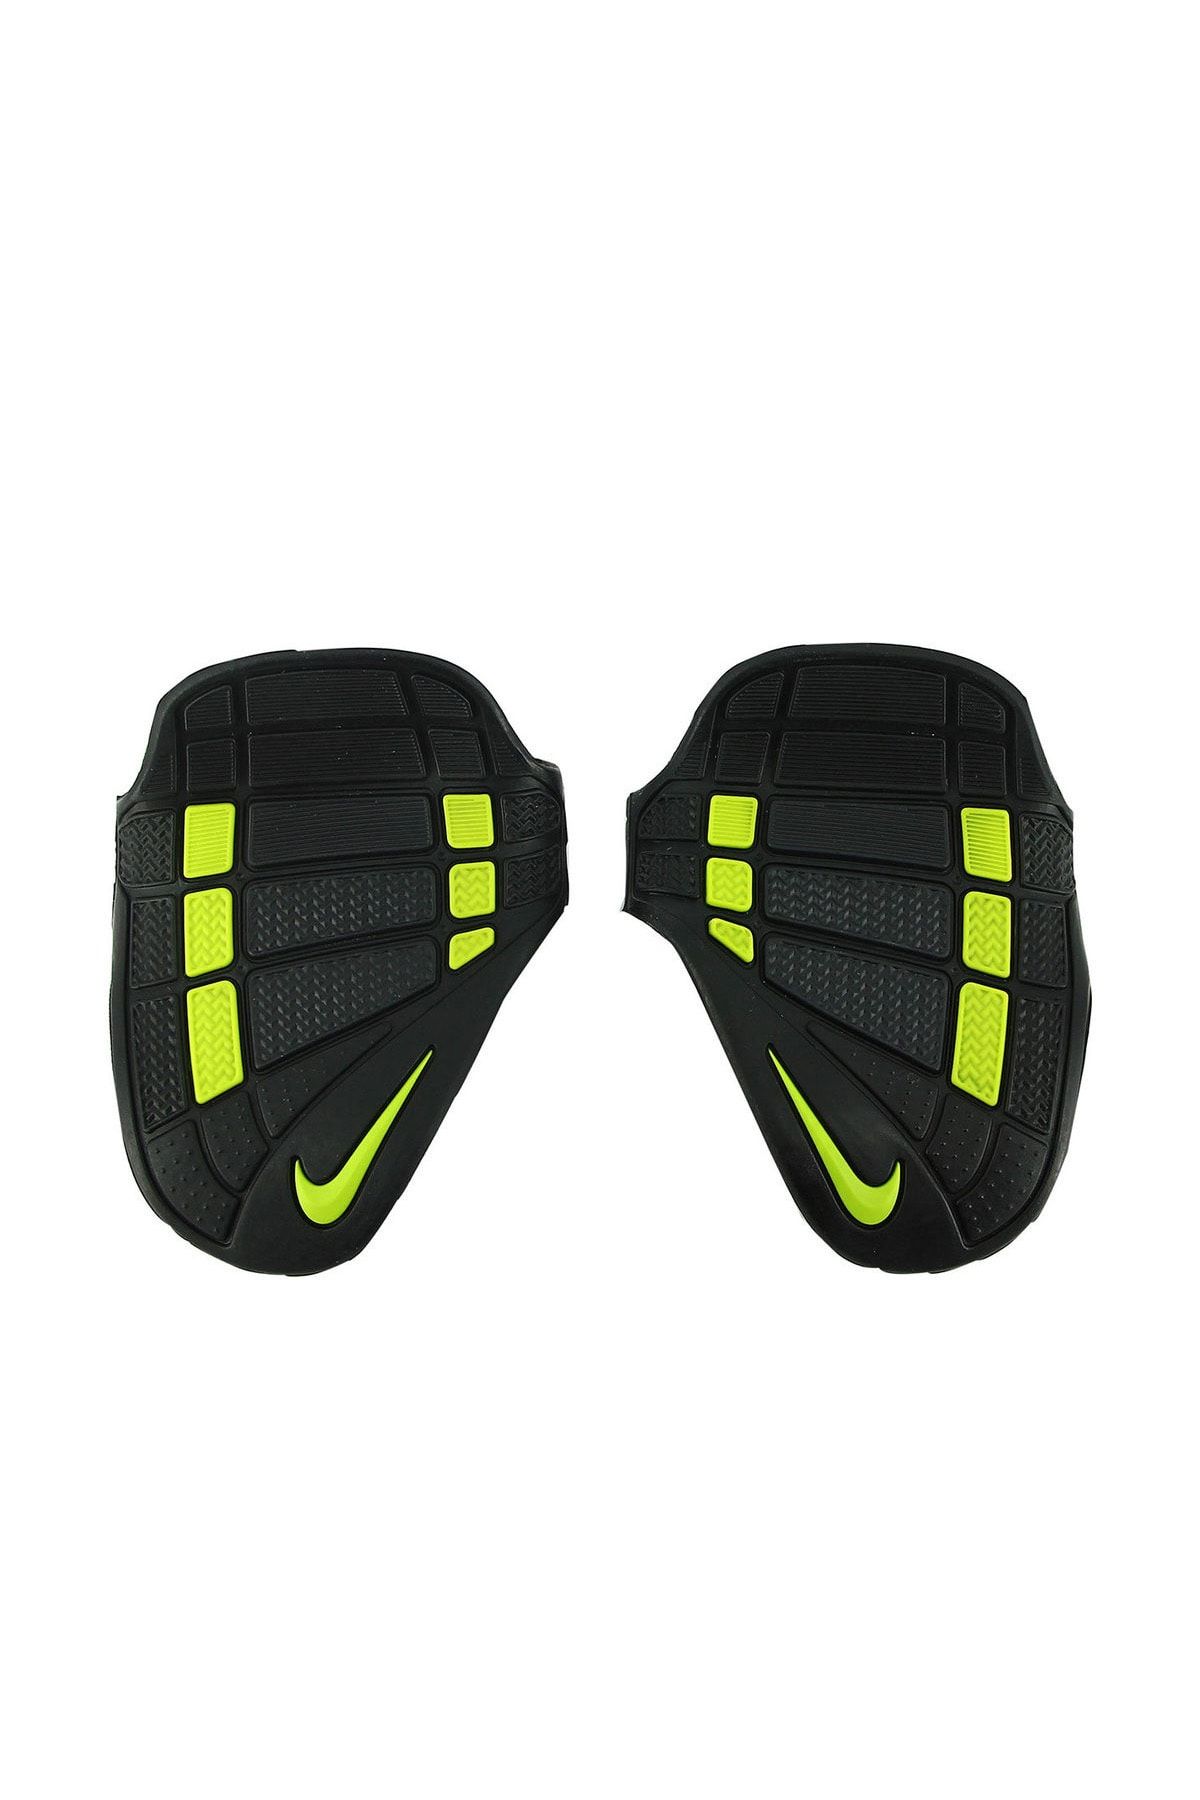 Nike Alpha Training Grips Siyah-Sari Antrenman Ağirlik Eldiveni - L N.LG.66.029.LG